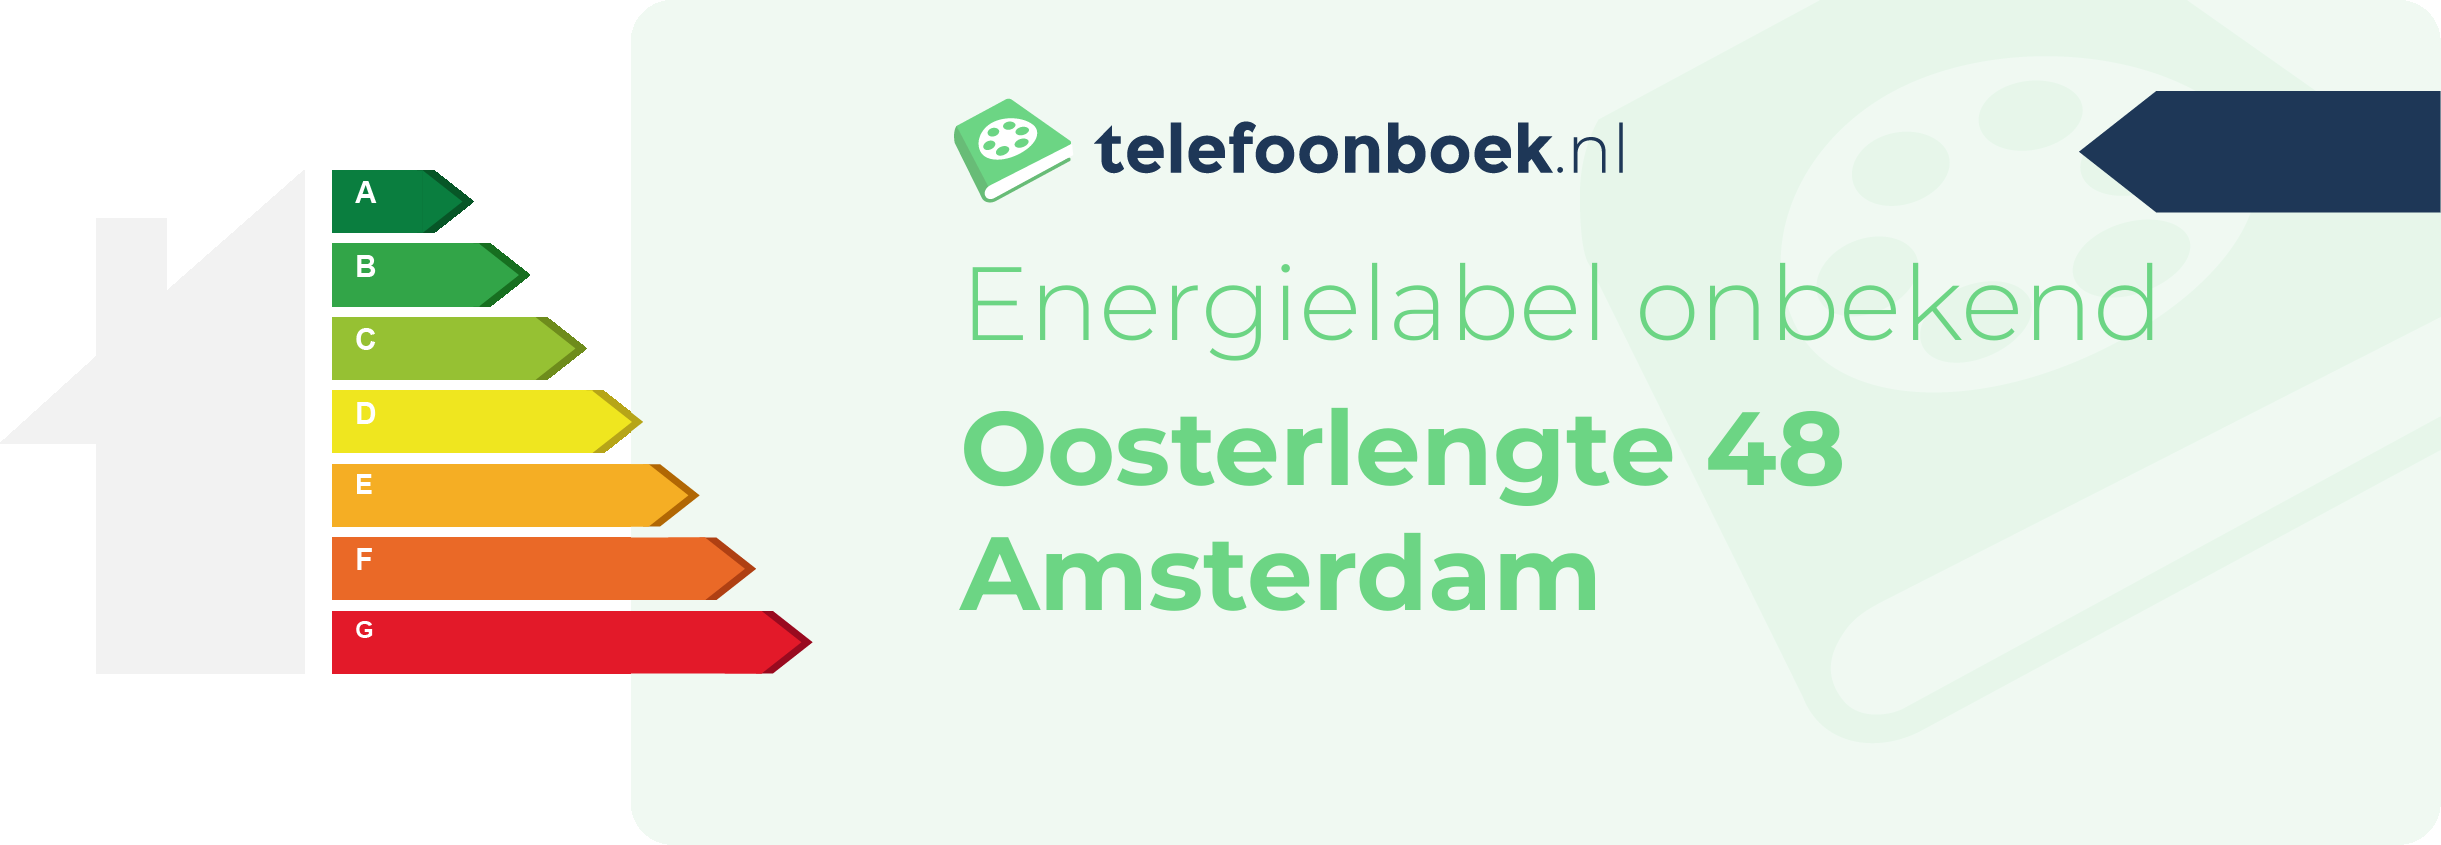 Energielabel Oosterlengte 48 Amsterdam